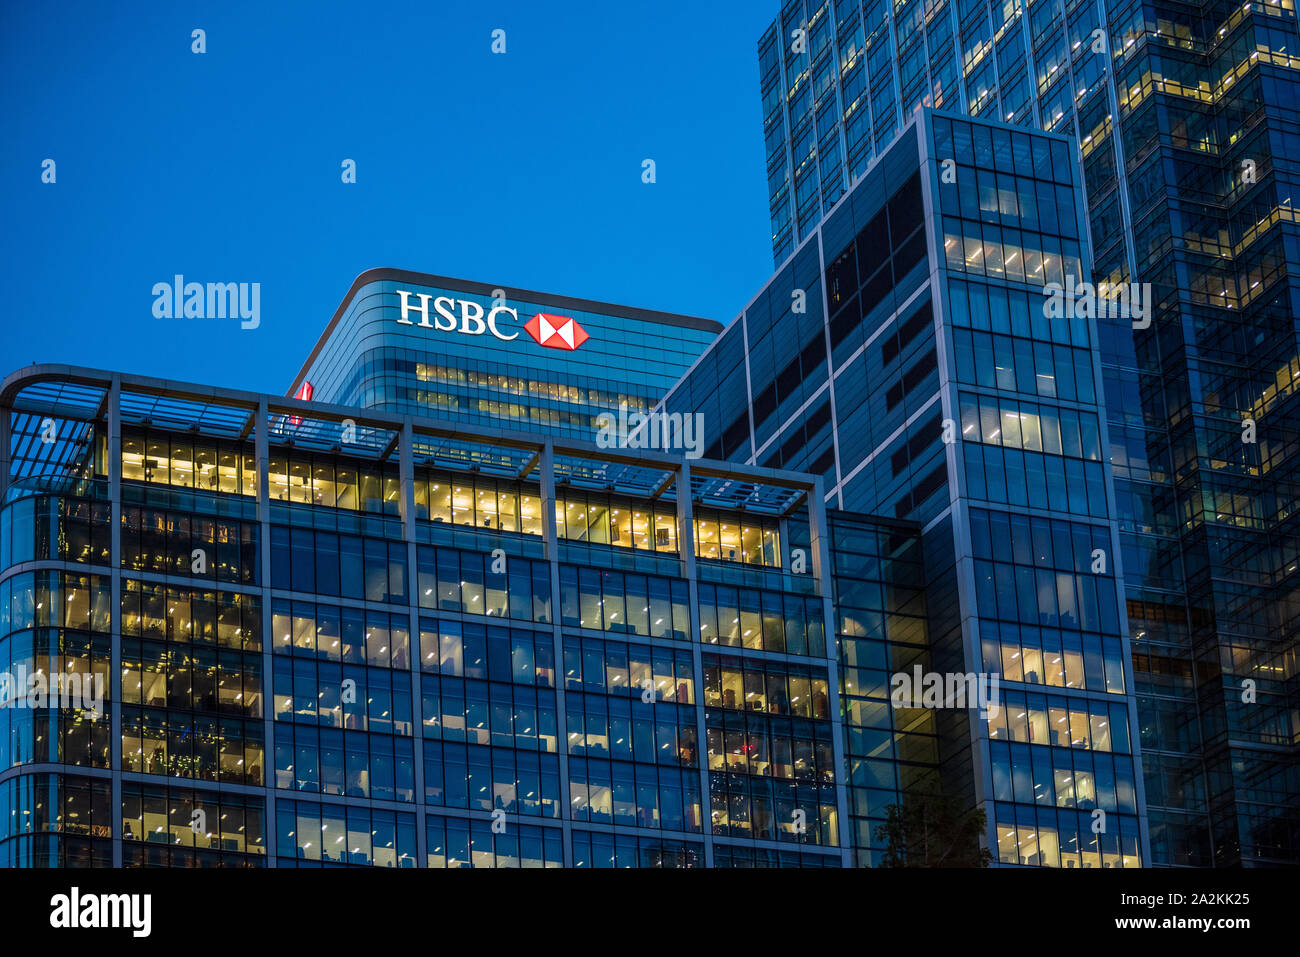 Torre HSBC Canary Wharf - La torre HSBC appare al di sopra degli altri servizi finanziari degli edifici in London Canary Wharf Foto Stock